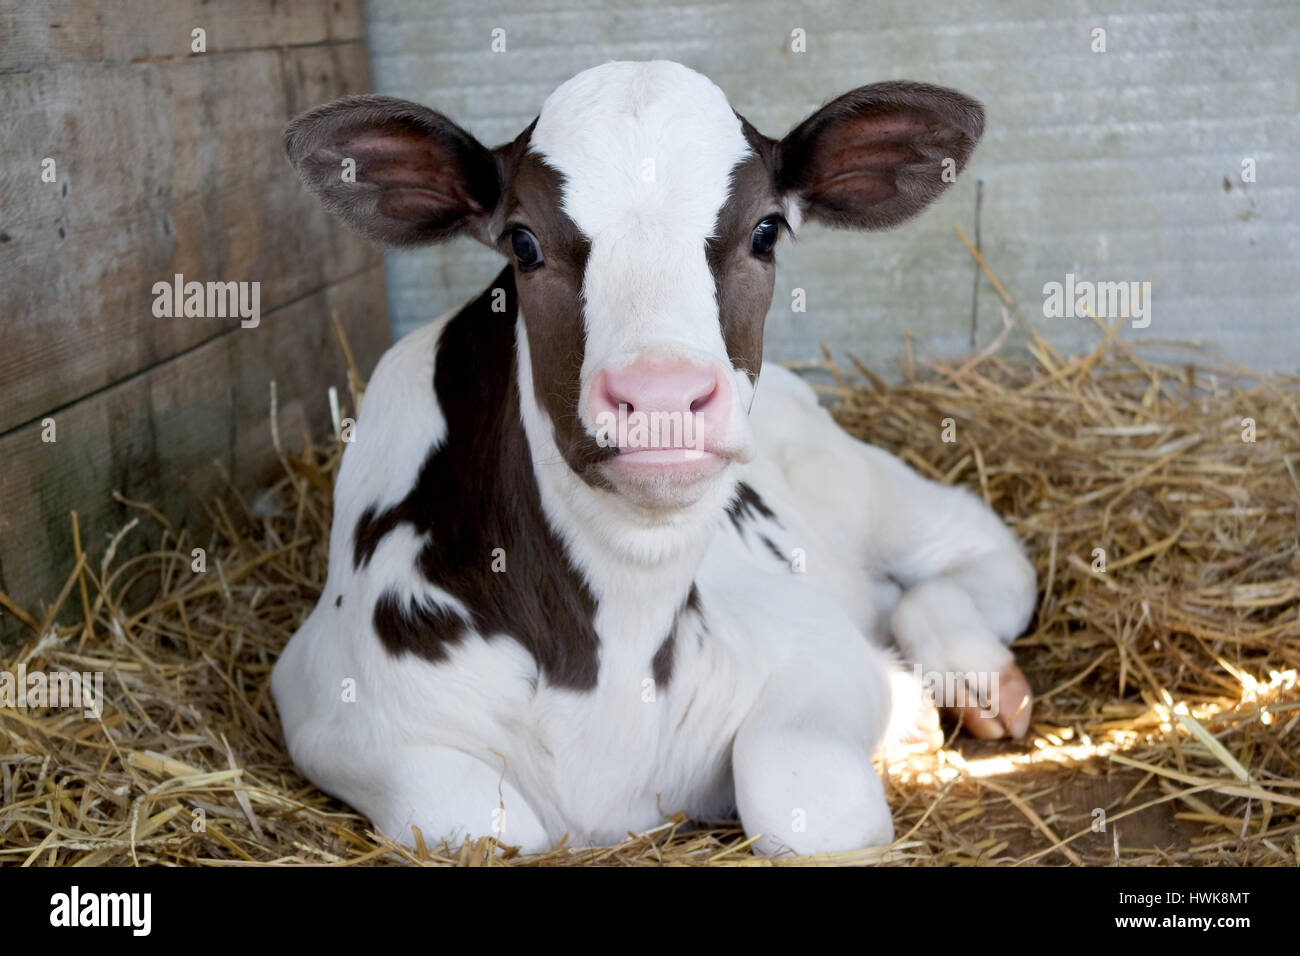 Veal?, Babies dressed up as baby cows during the Kiddie Kap…